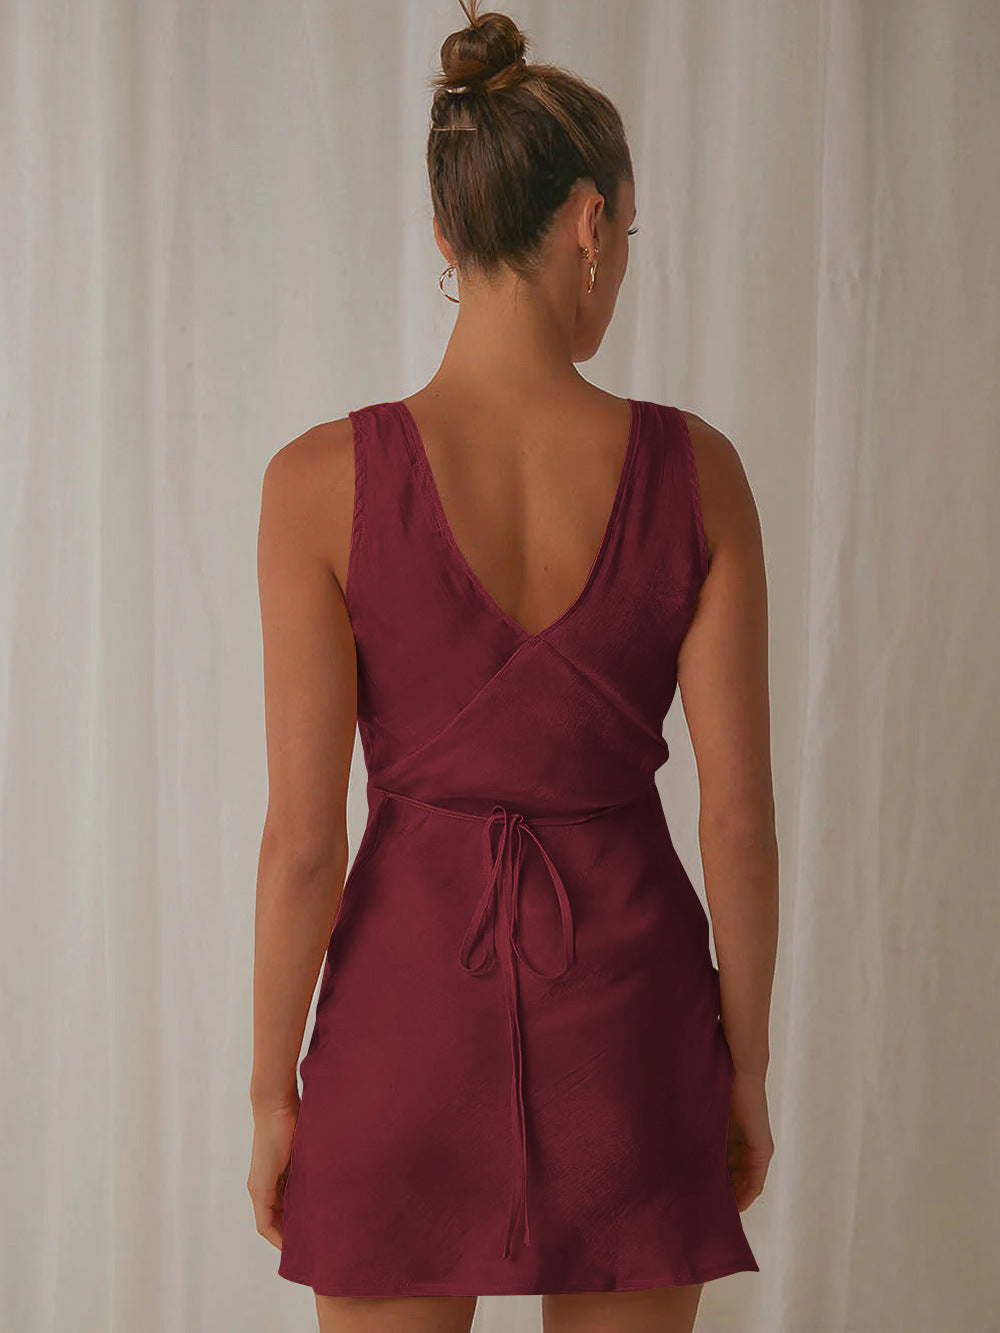 Krótka sukienka z dekoltem w kształcie litery V, bez rękawów, sznurowana i bez pleców